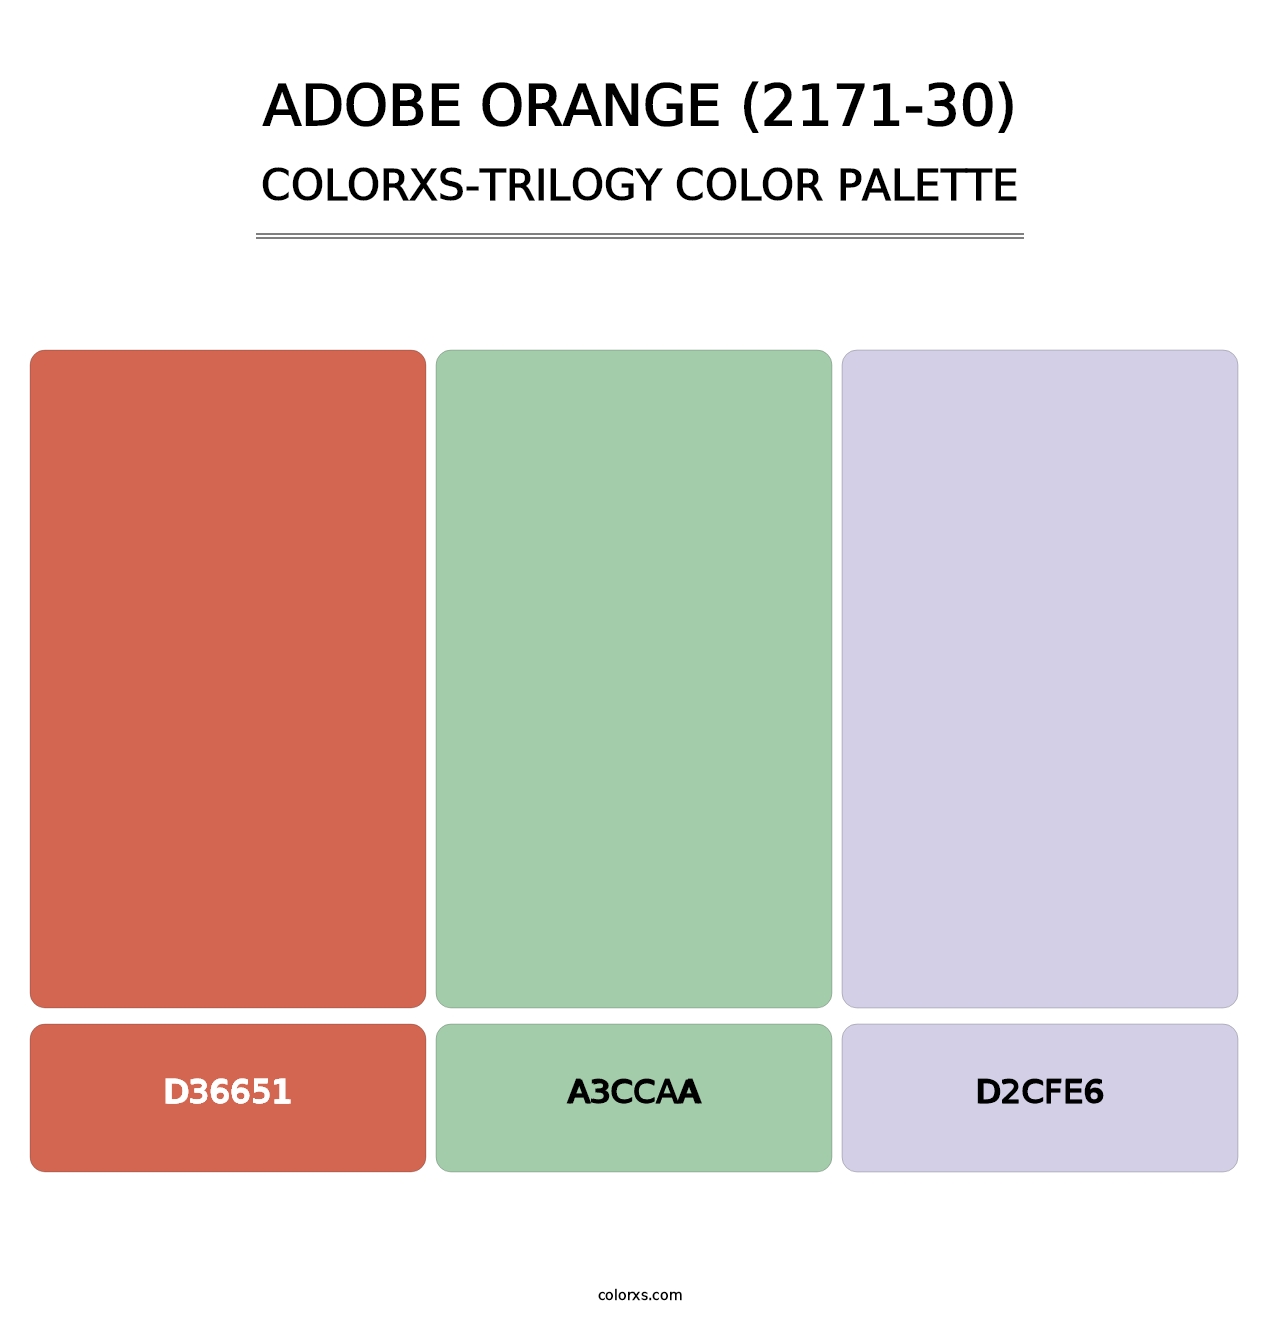 Adobe Orange (2171-30) - Colorxs Trilogy Palette